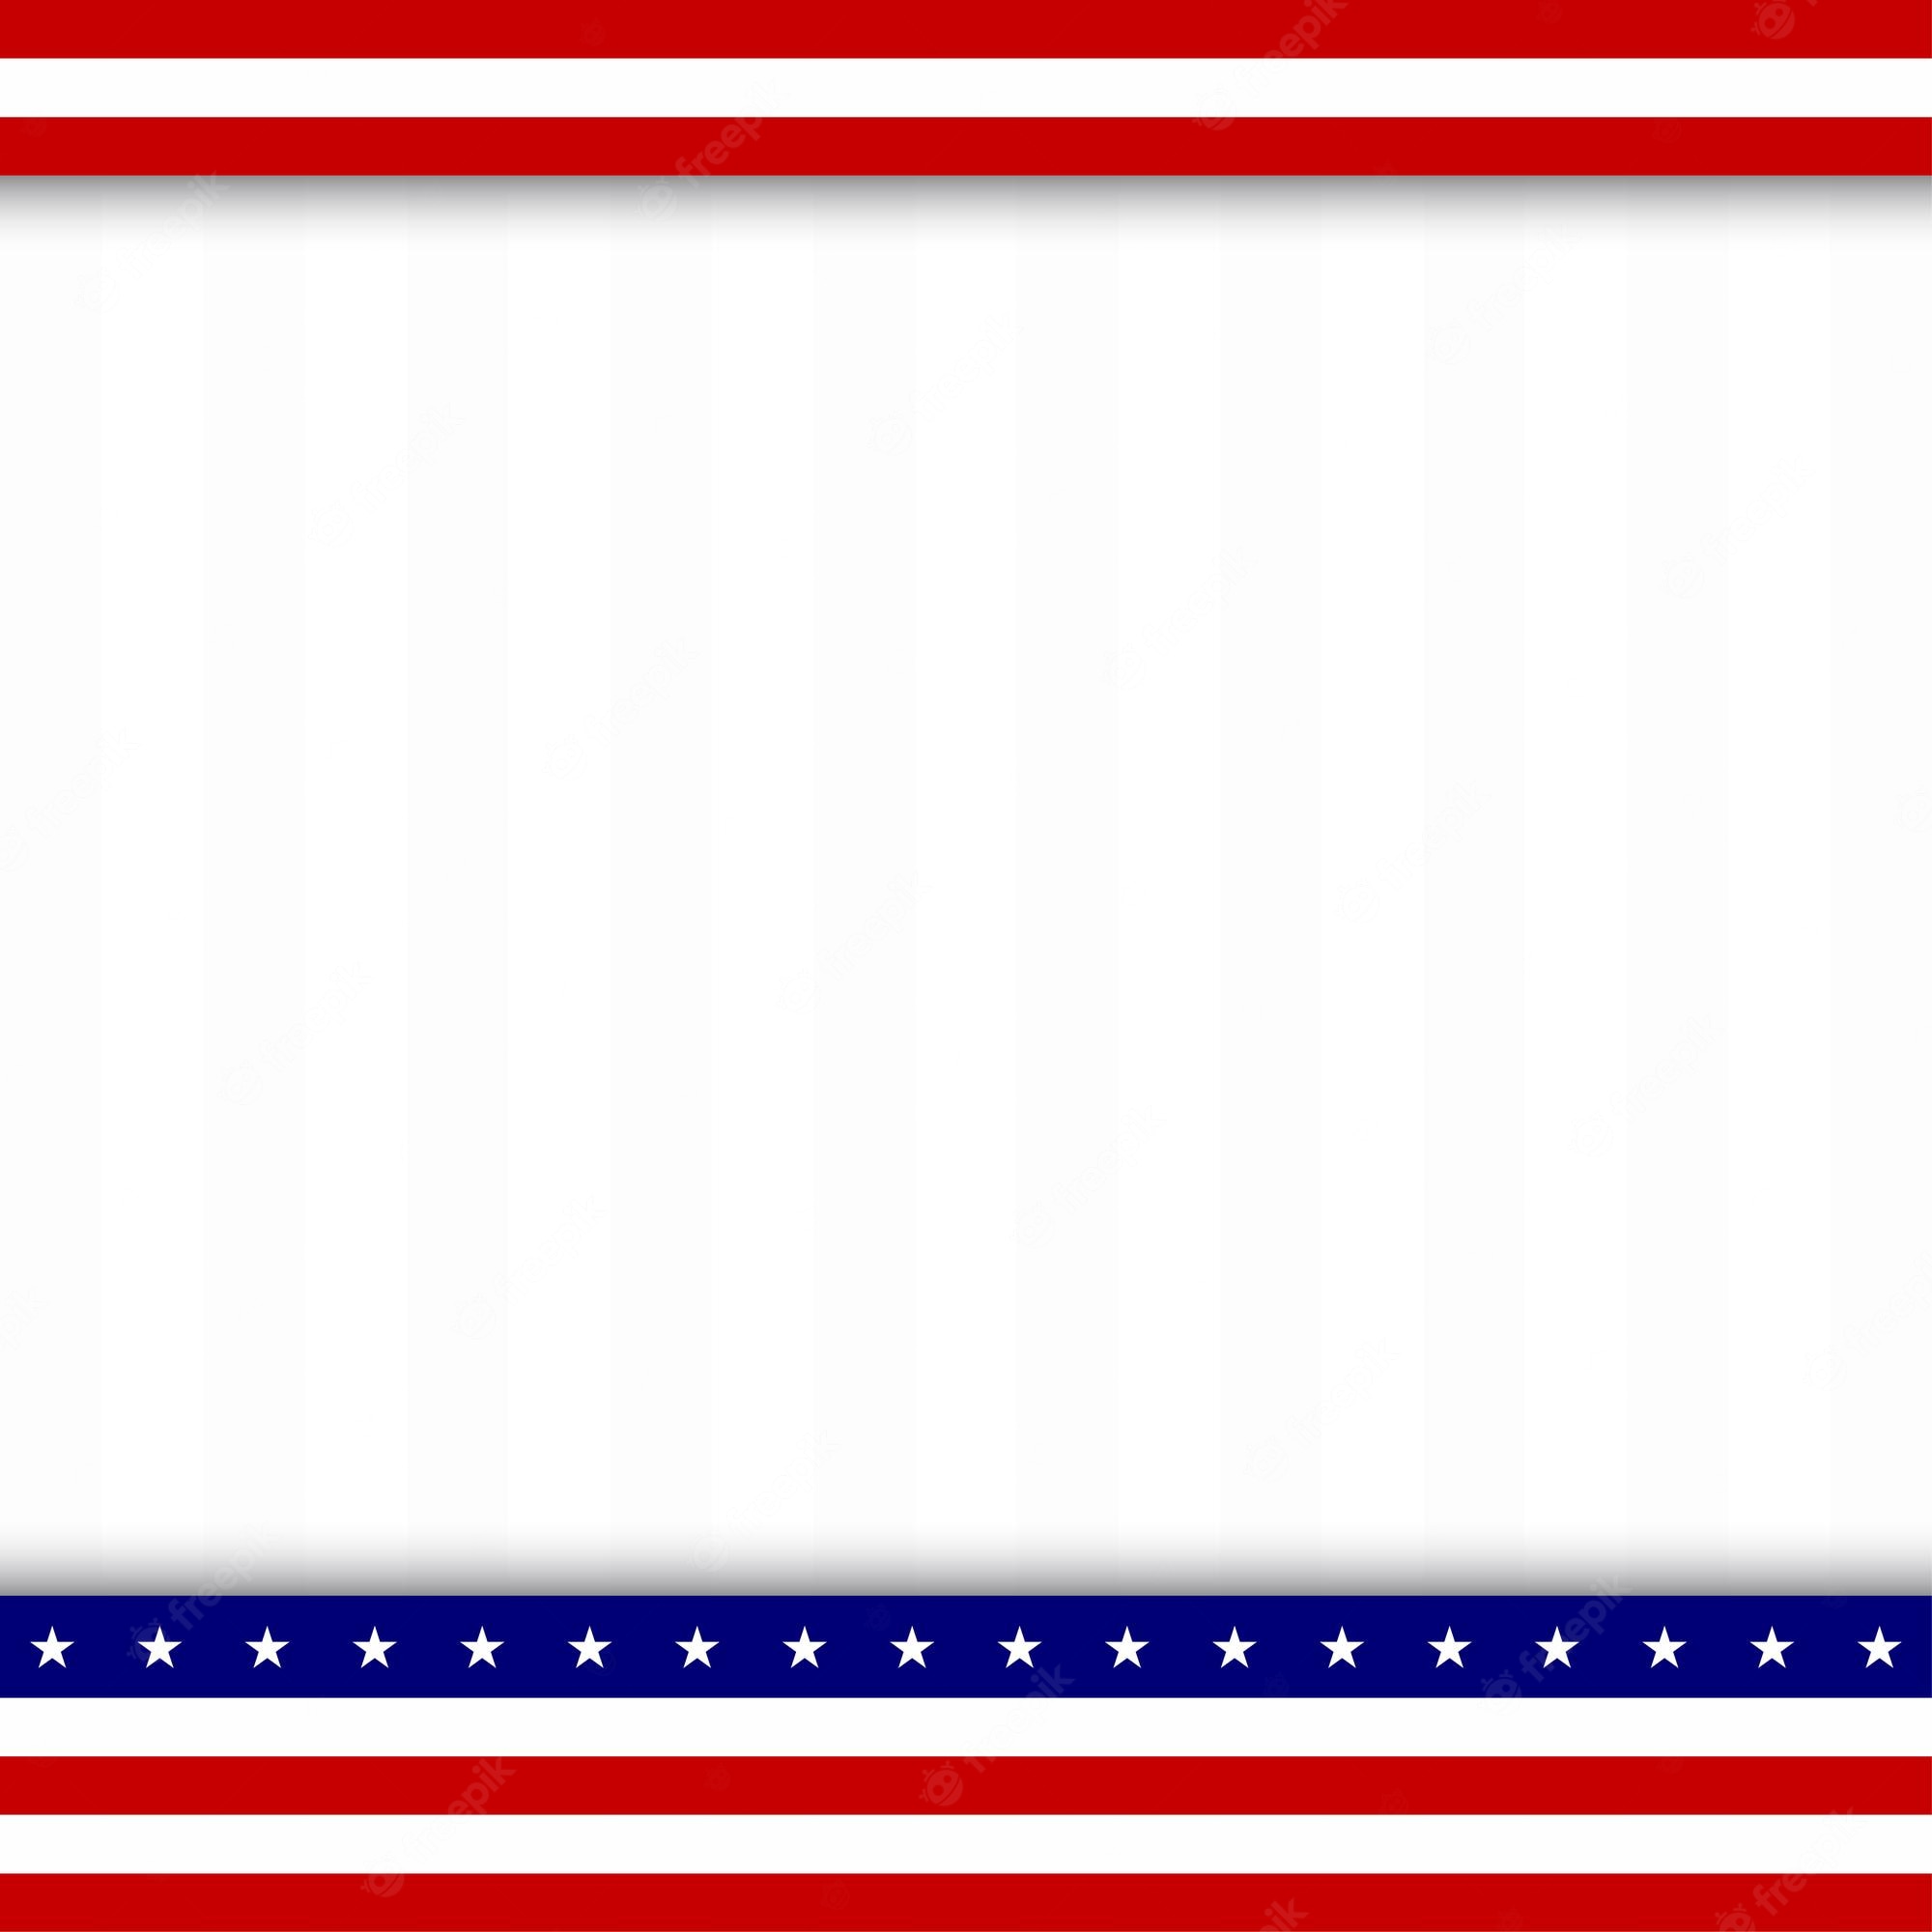 Black And White America Border Clipart - American Flag Border - Clip ...